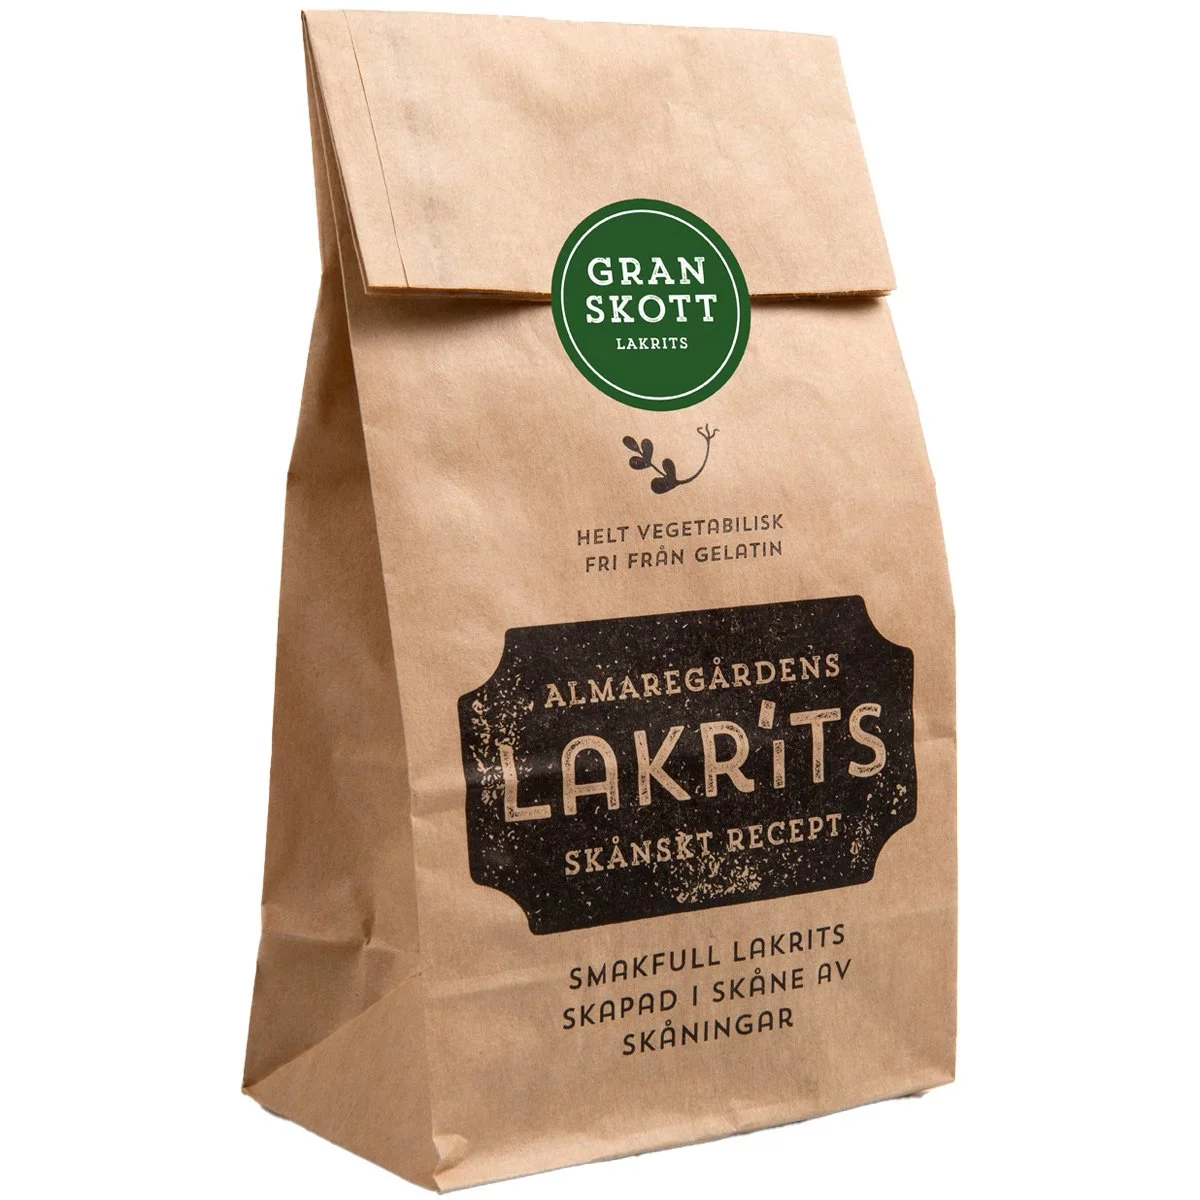 Almaregårdens Lakritz Granskott aus Schweden - Lakritzstückchen mit Fichtenspitzen-Aroma (150g) 1